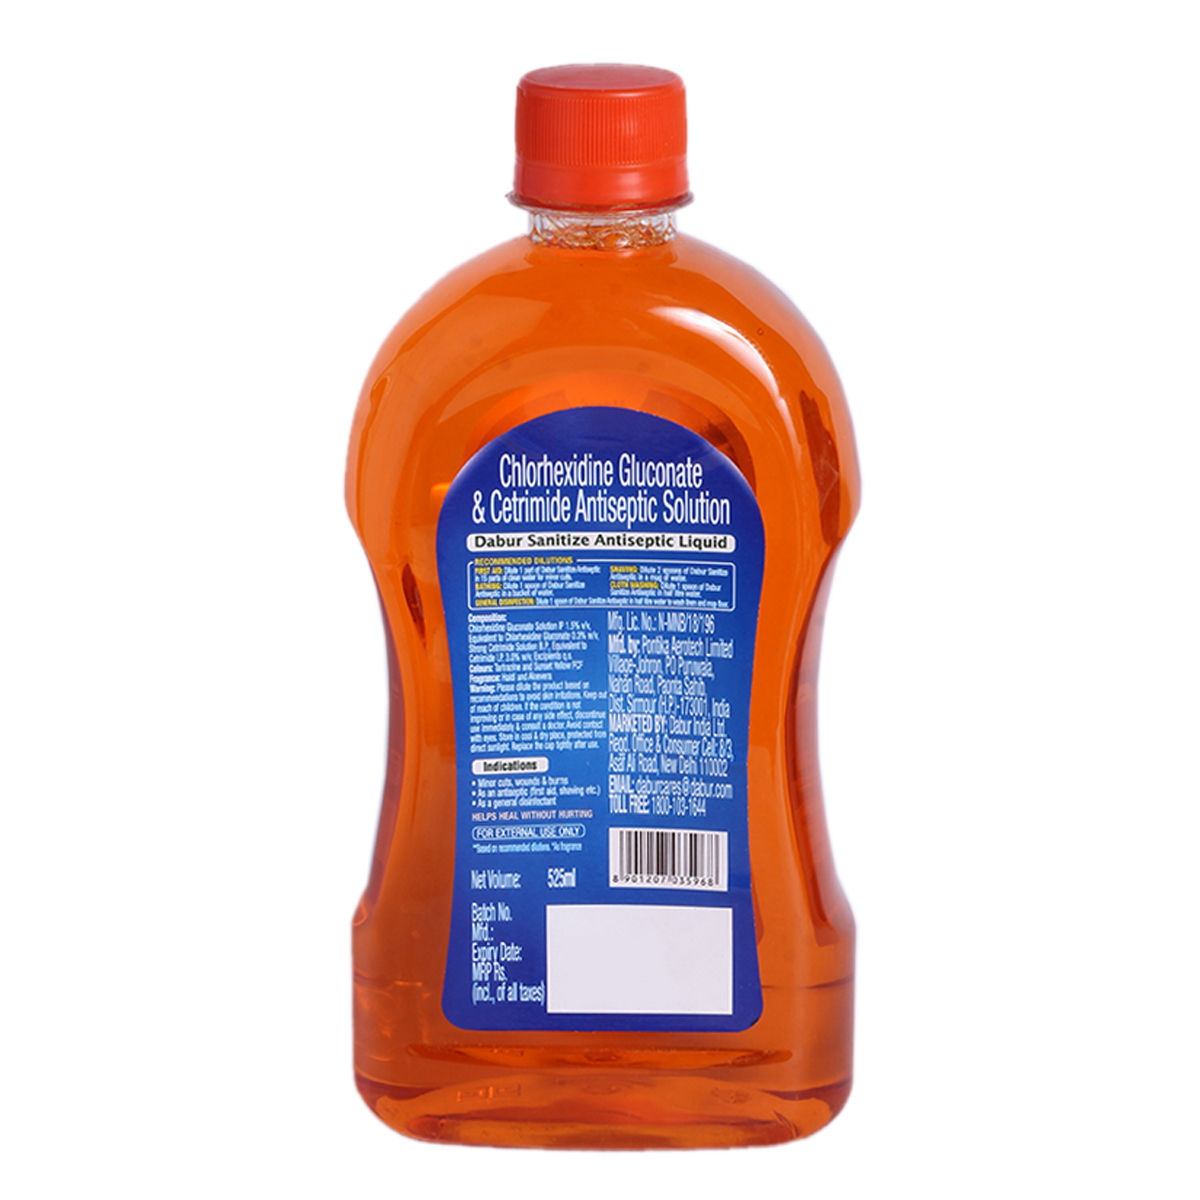 Dabur Sanitize Antiseptic Liquid, 525 ml, Pack of 1 